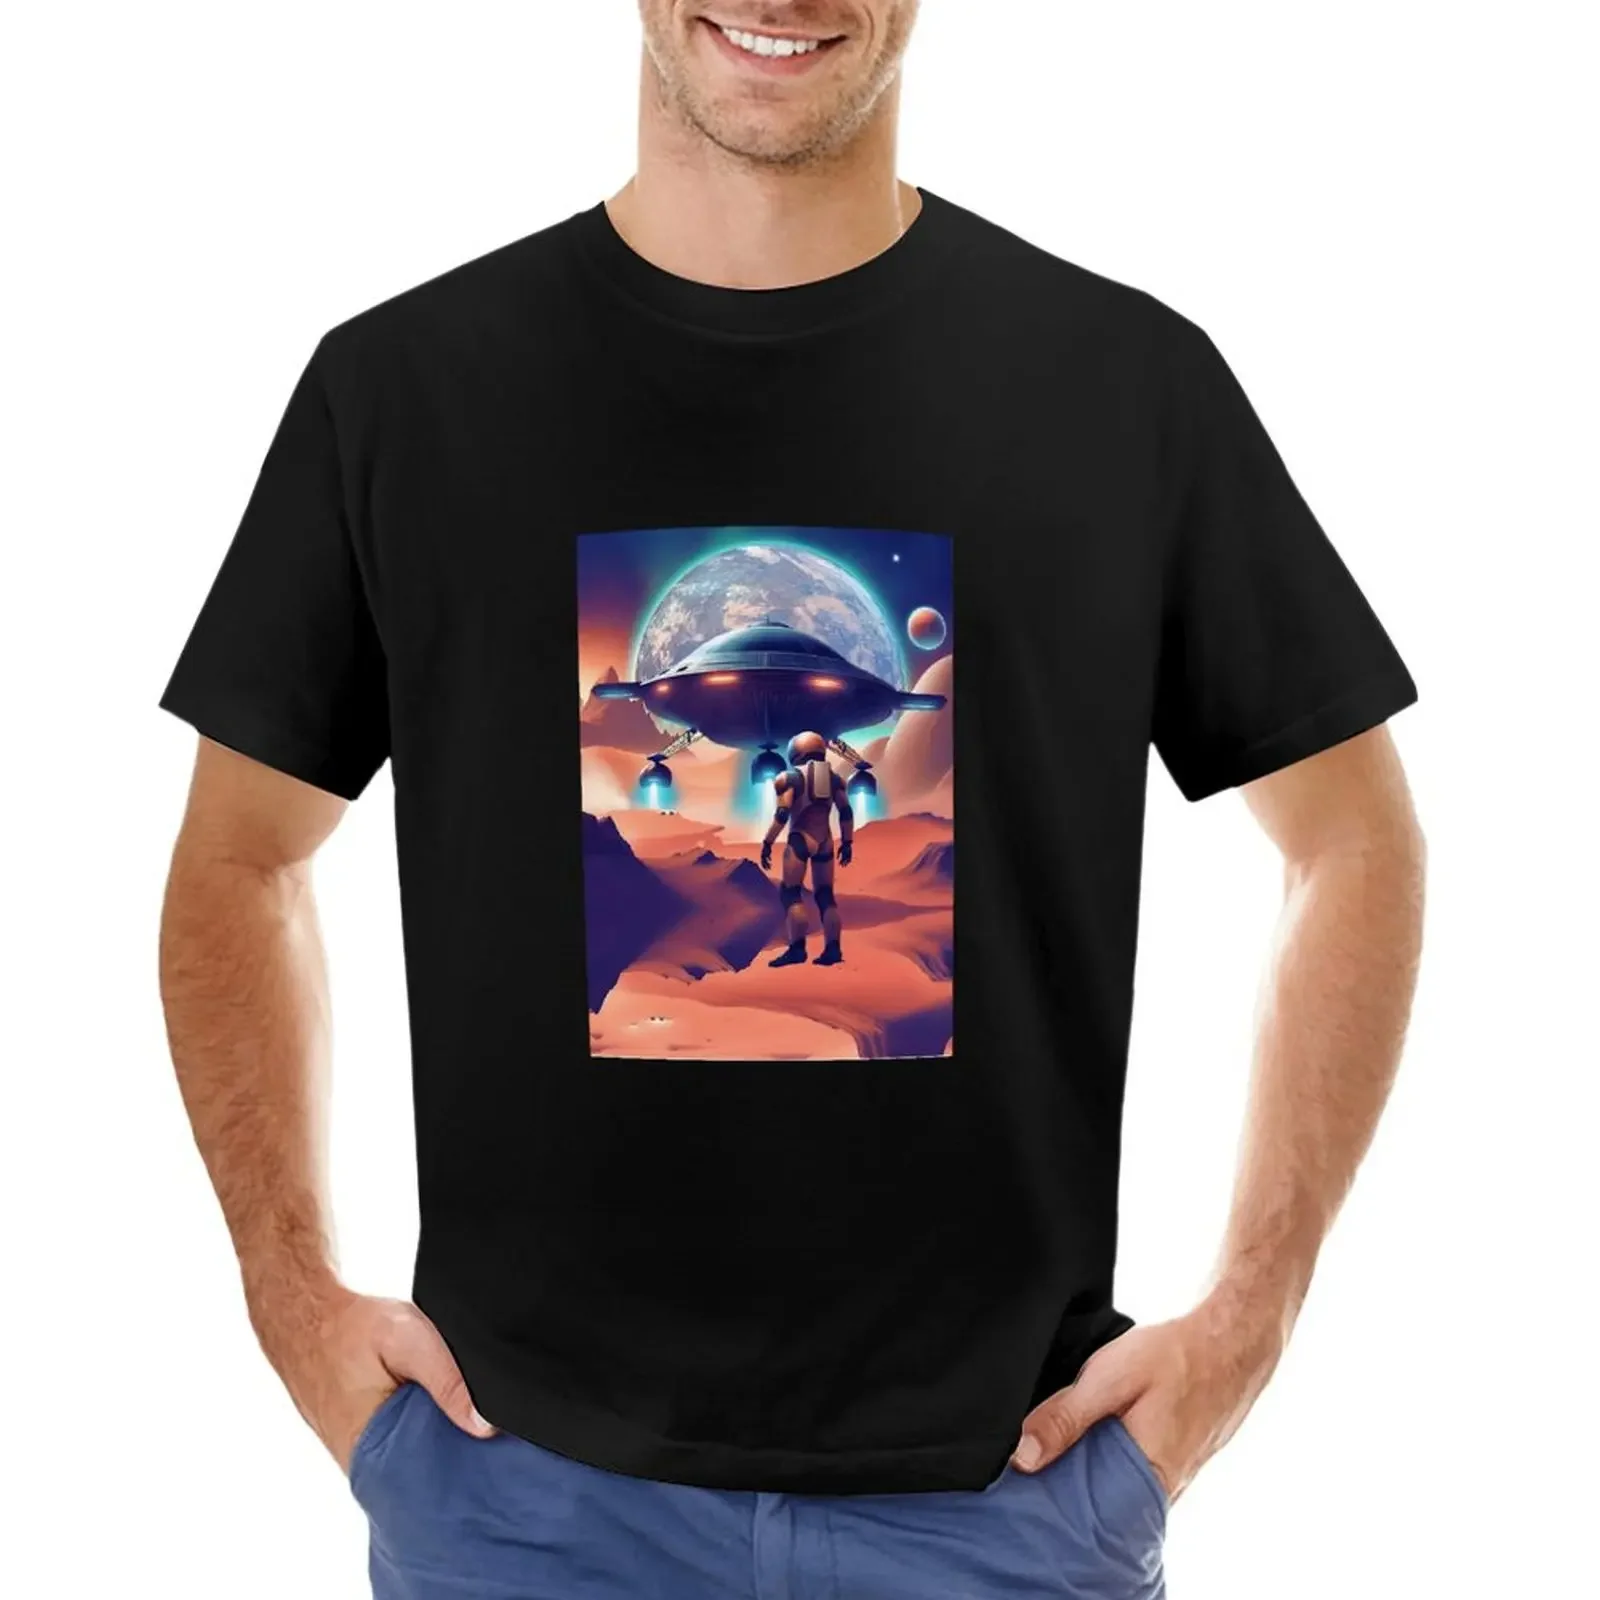 

Футболка Humanoid с надписью «Ожидание корабля в земле», летний топ, выдержанная простая летняя одежда, футболки для мужчин, хлопок